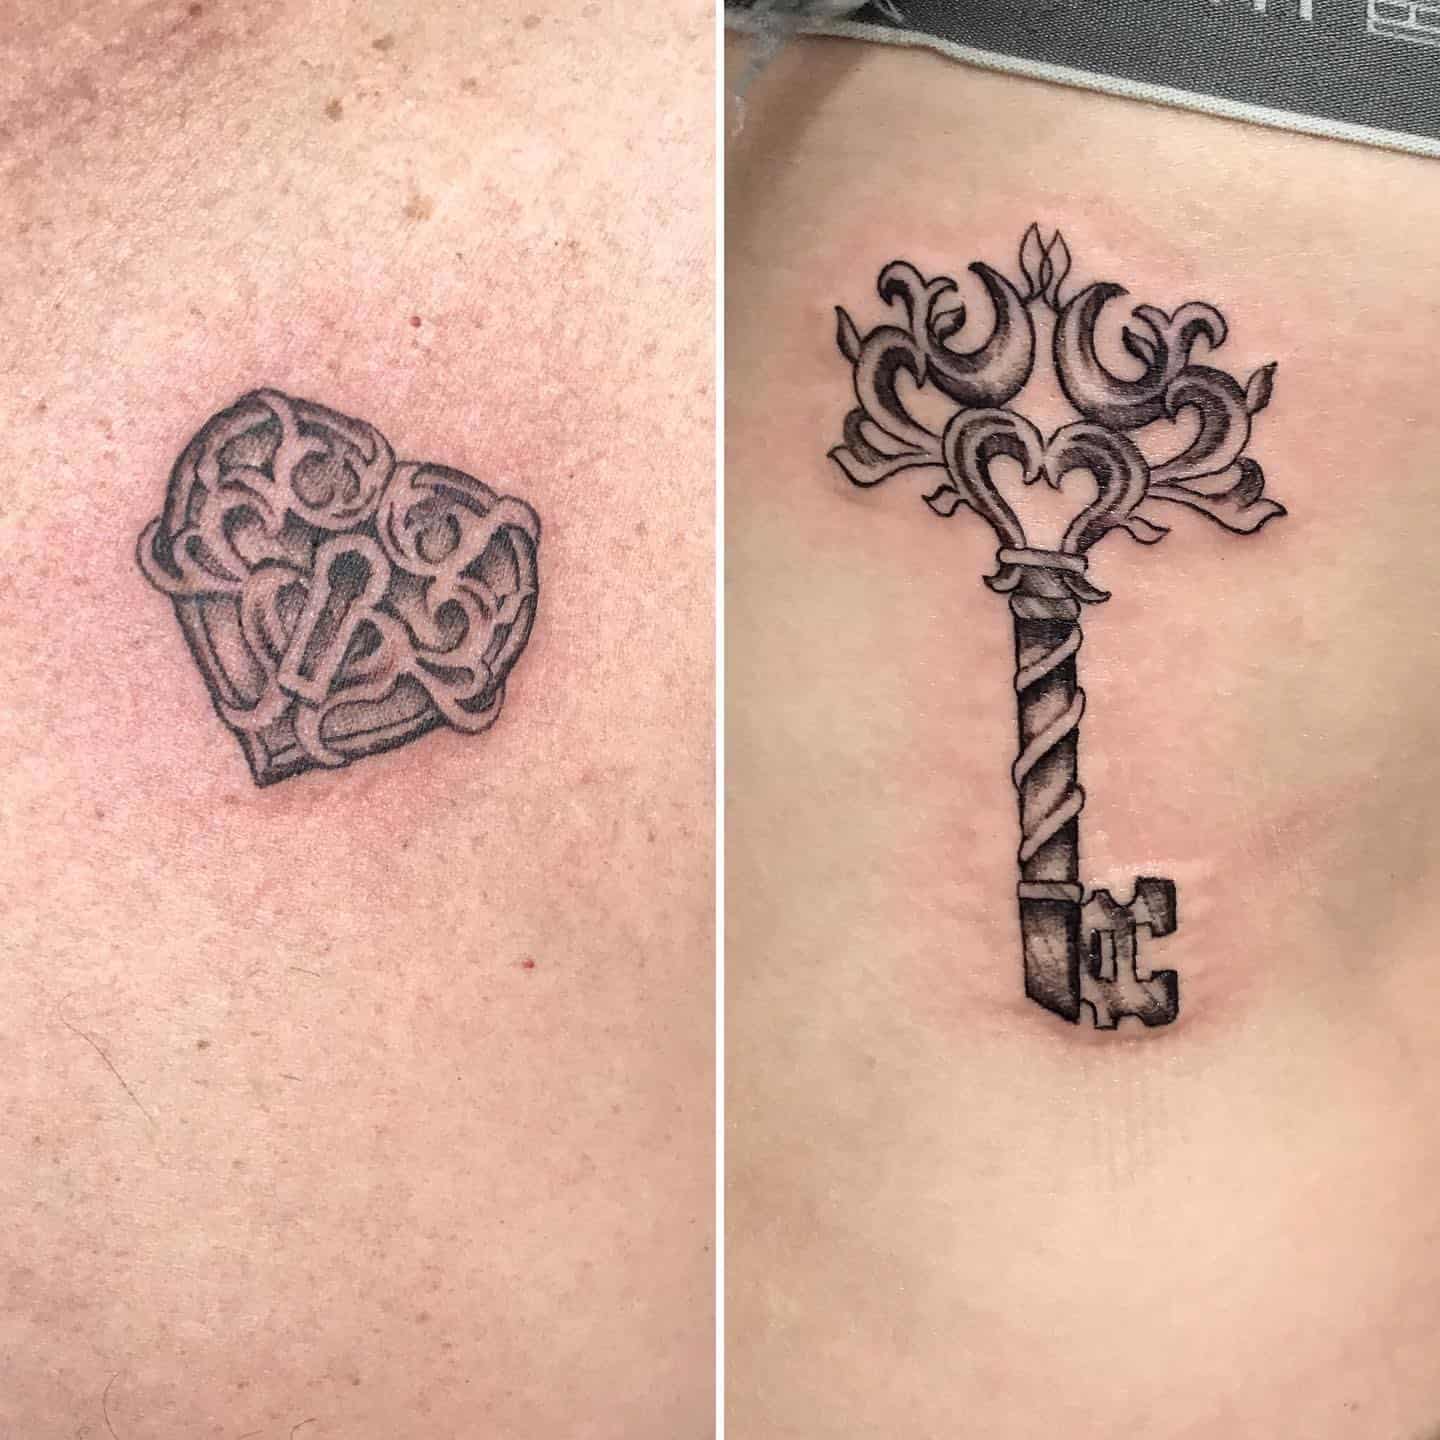 Key and Lock Tattoo 1